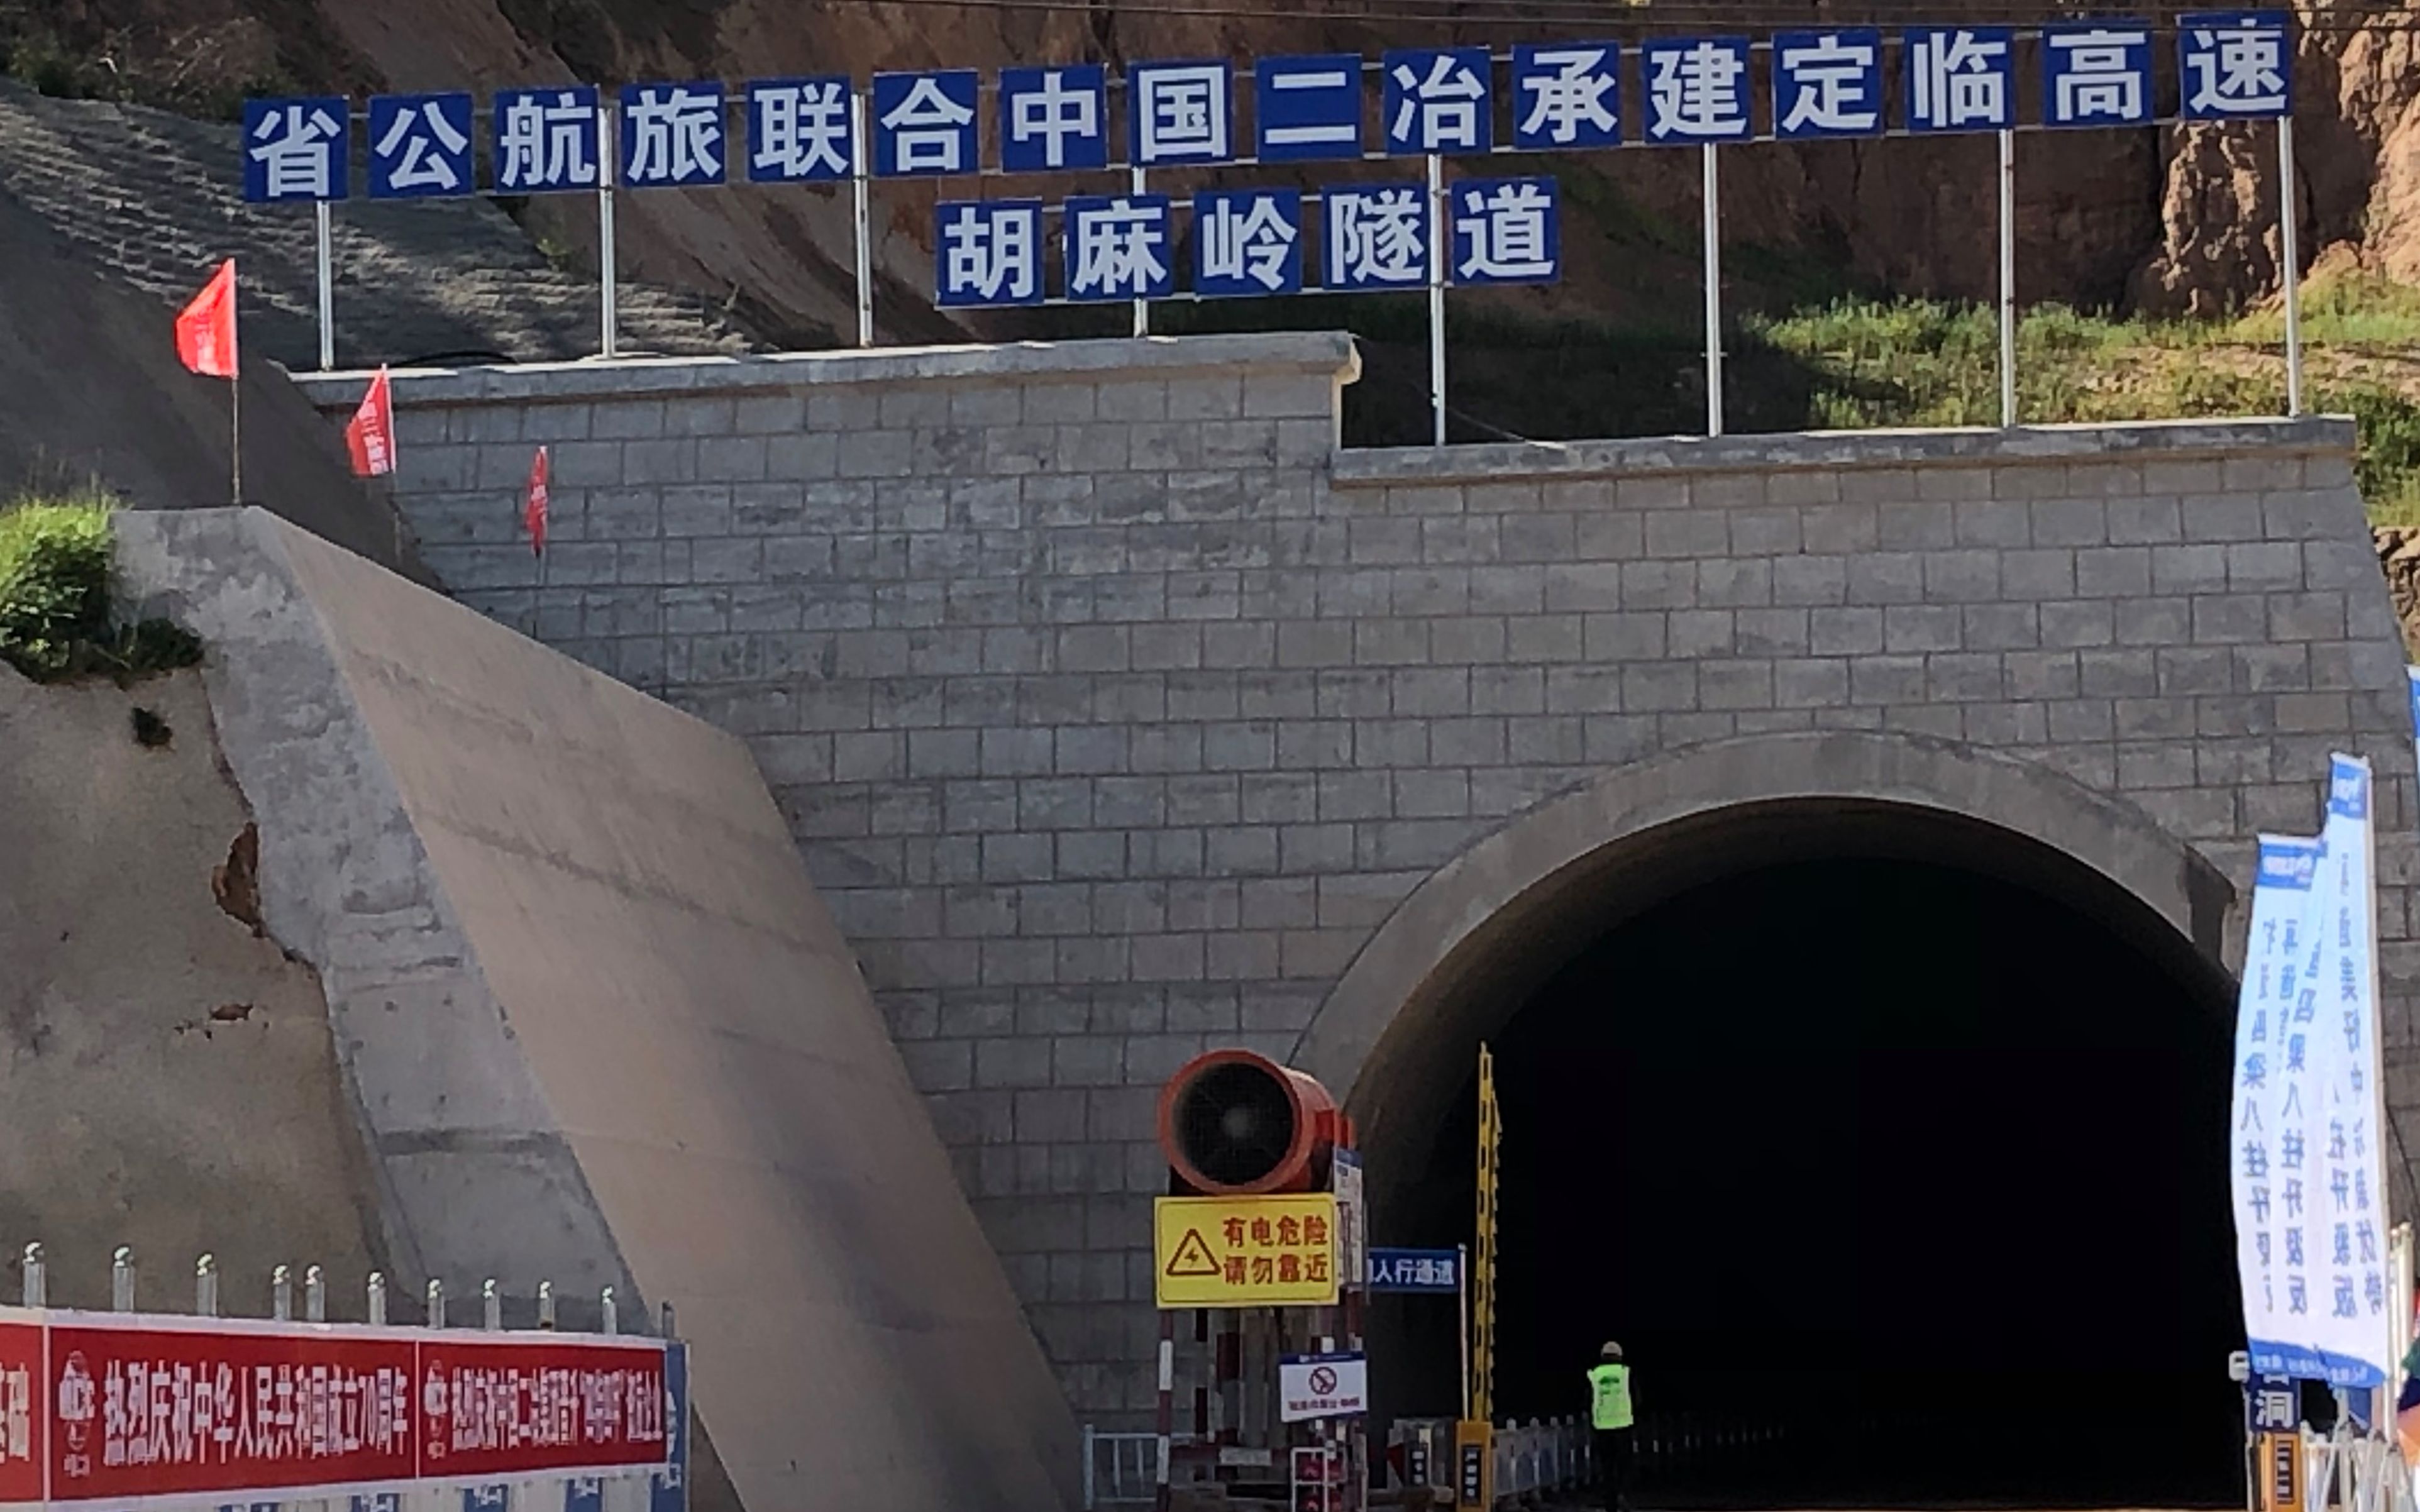 胡麻岭隧道地质结构复杂,施工难度大,同在此处的兰渝铁路胡麻岭隧道历